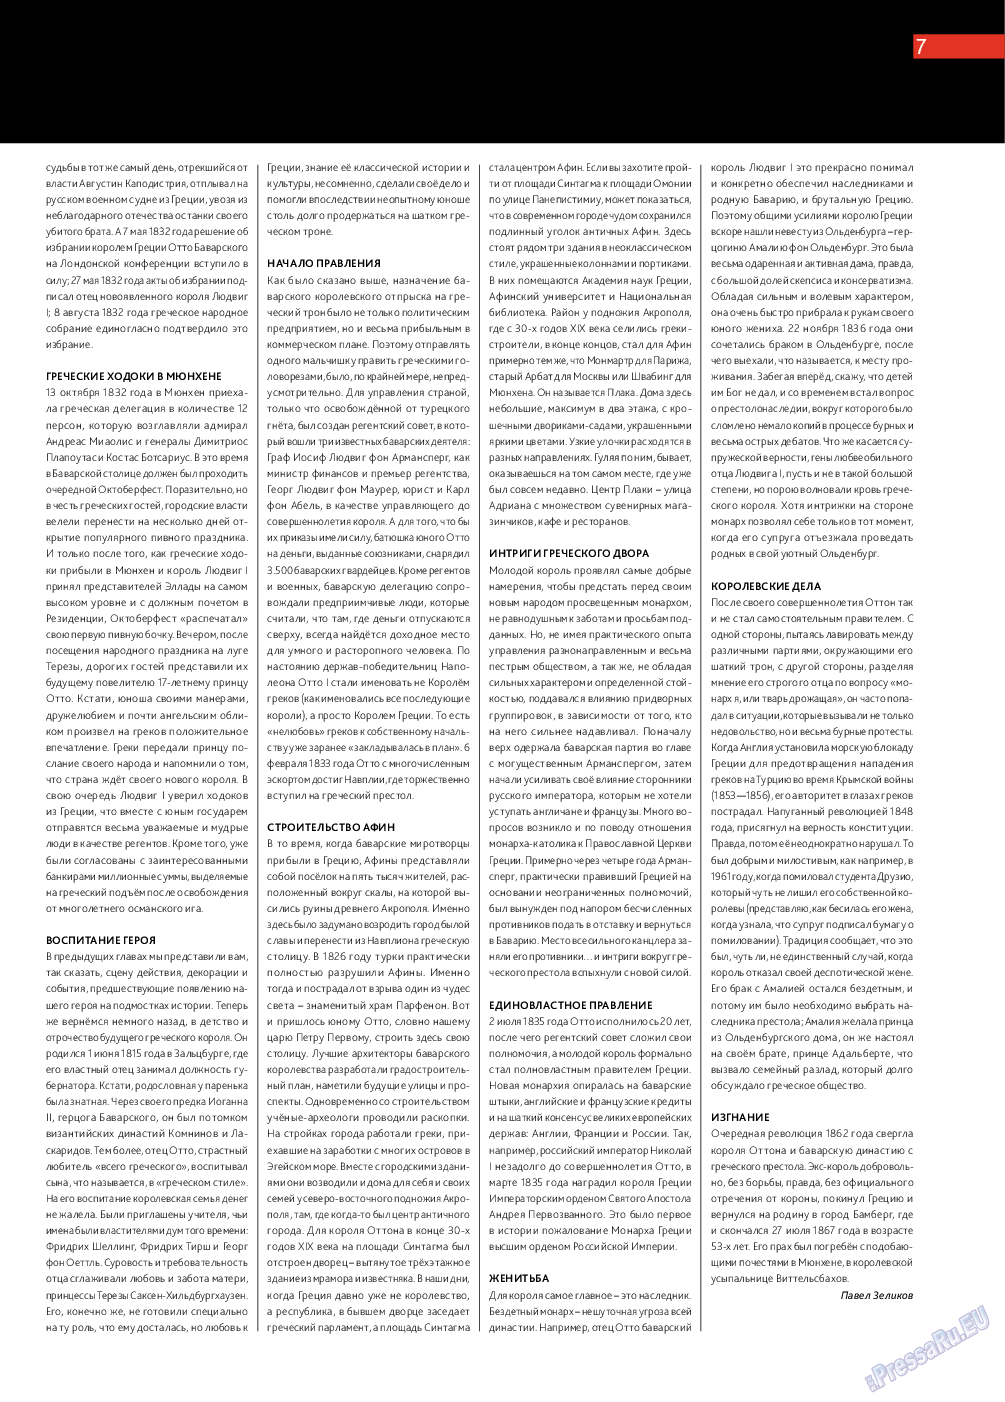 Афиша Augsburg (журнал). 2014 год, номер 4, стр. 7